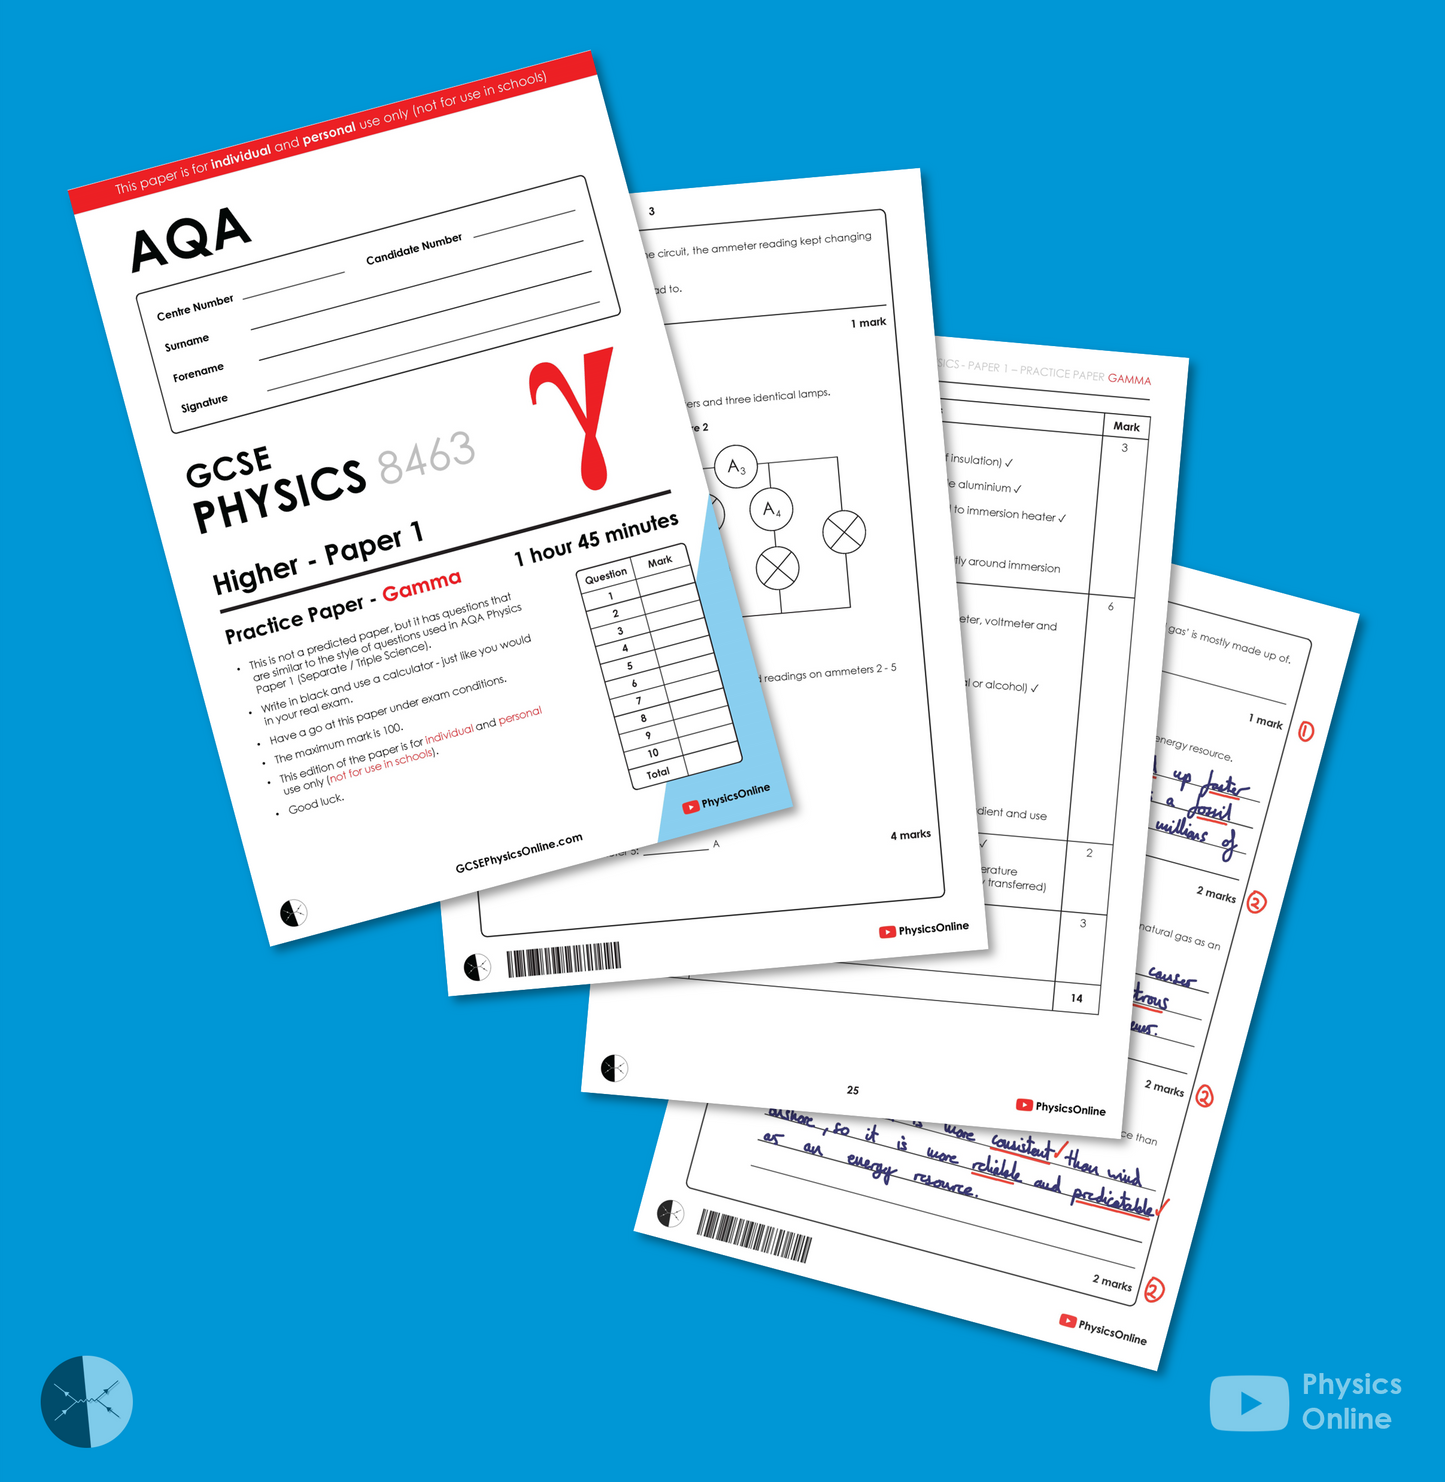 AQA Practice Paper | Paper 1 - Gamma | Individual Issue | GCSE Physics